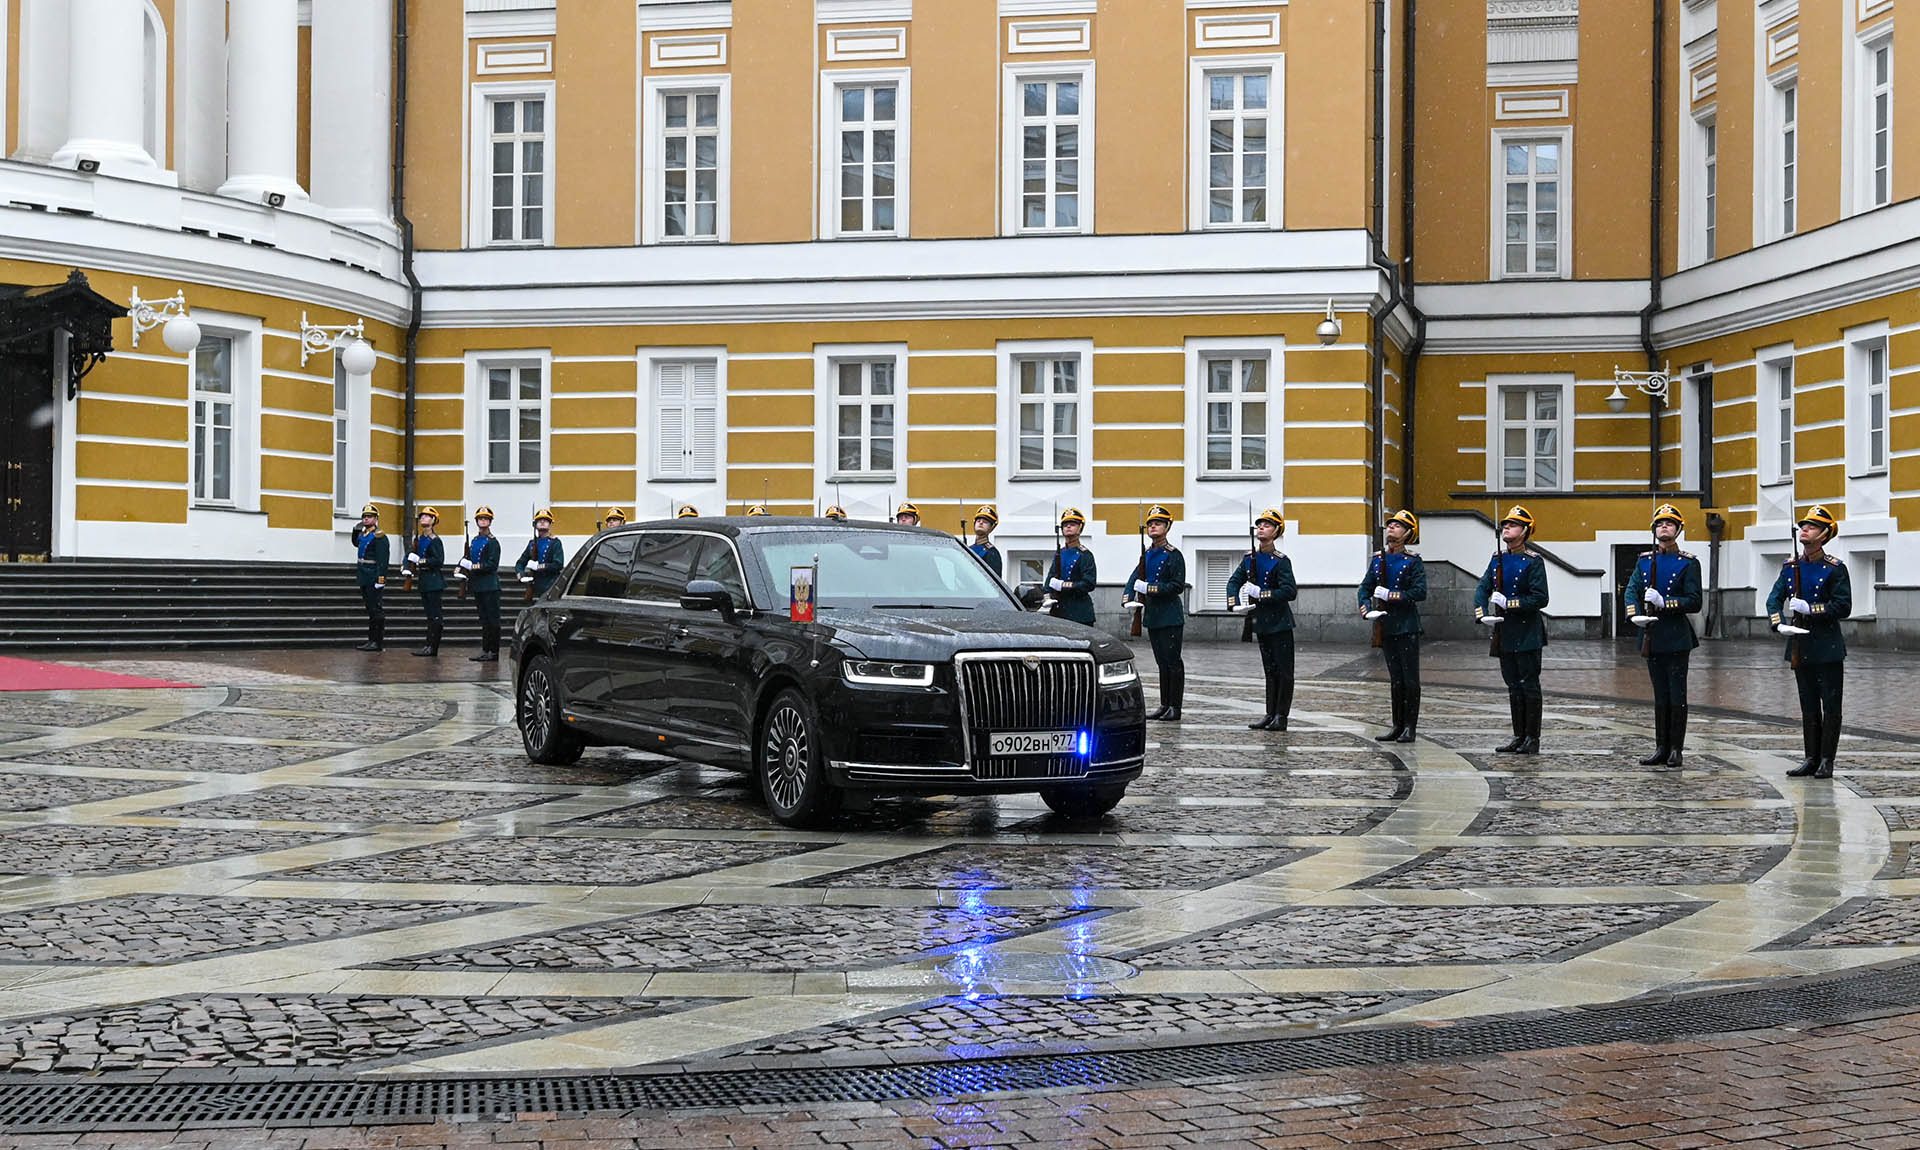 Обновленный автомобиль кортежа президента РФ Aurus Senat 